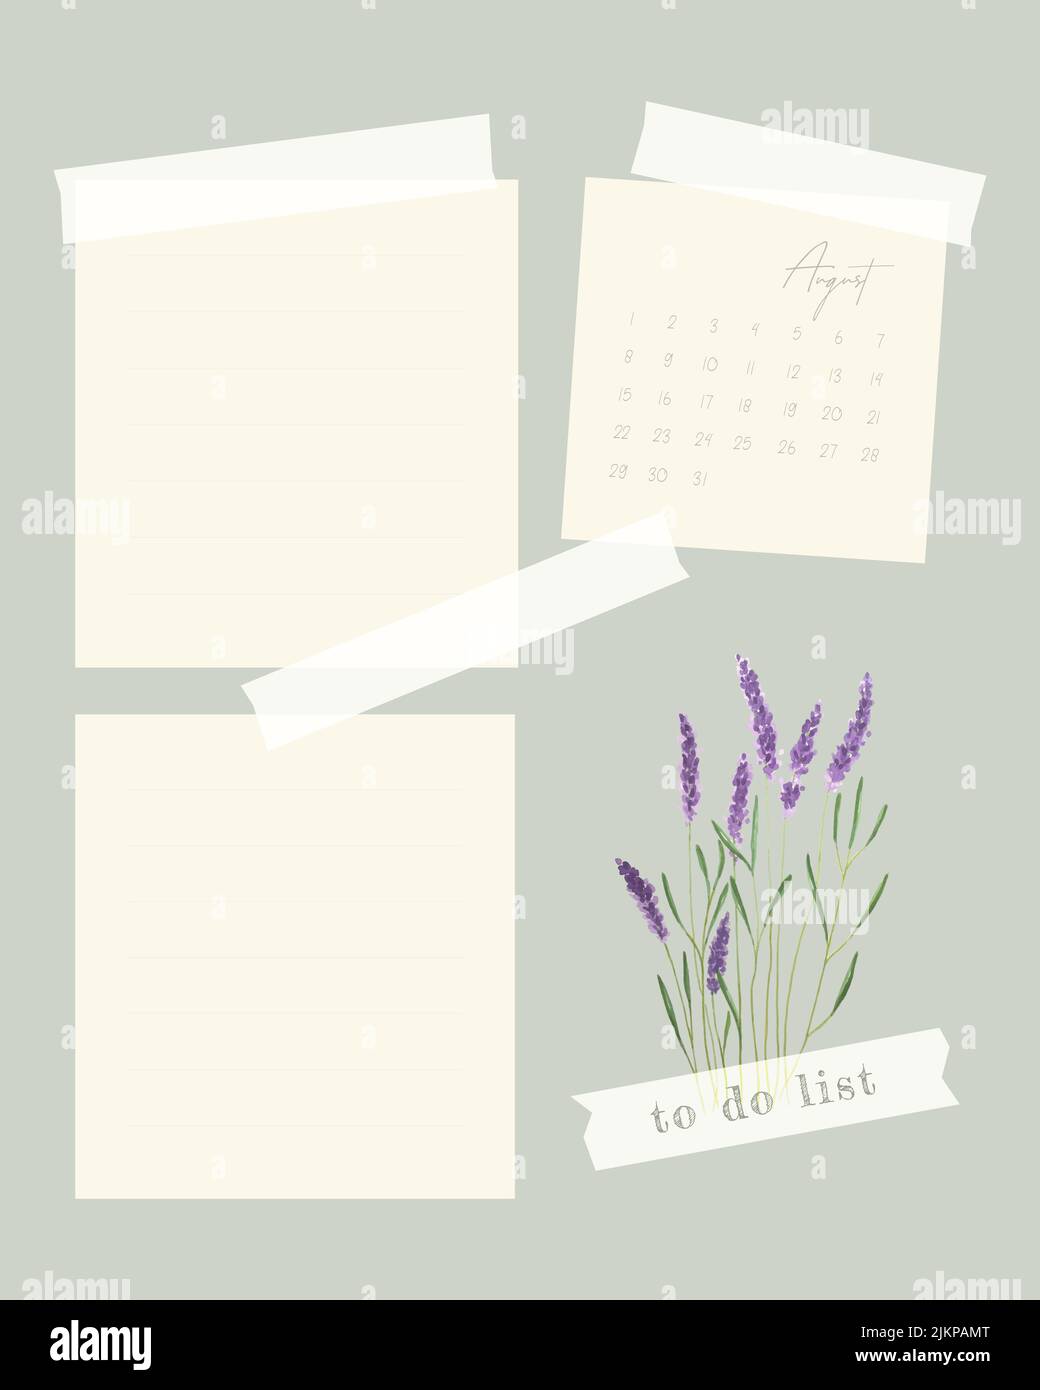 August 2022 Kalender Collage Vorlage für Notiz, To-Do-Liste, Erinnerung, Lavendel Aquarell Handzeichnung. Vektorgrafik Stock Vektor